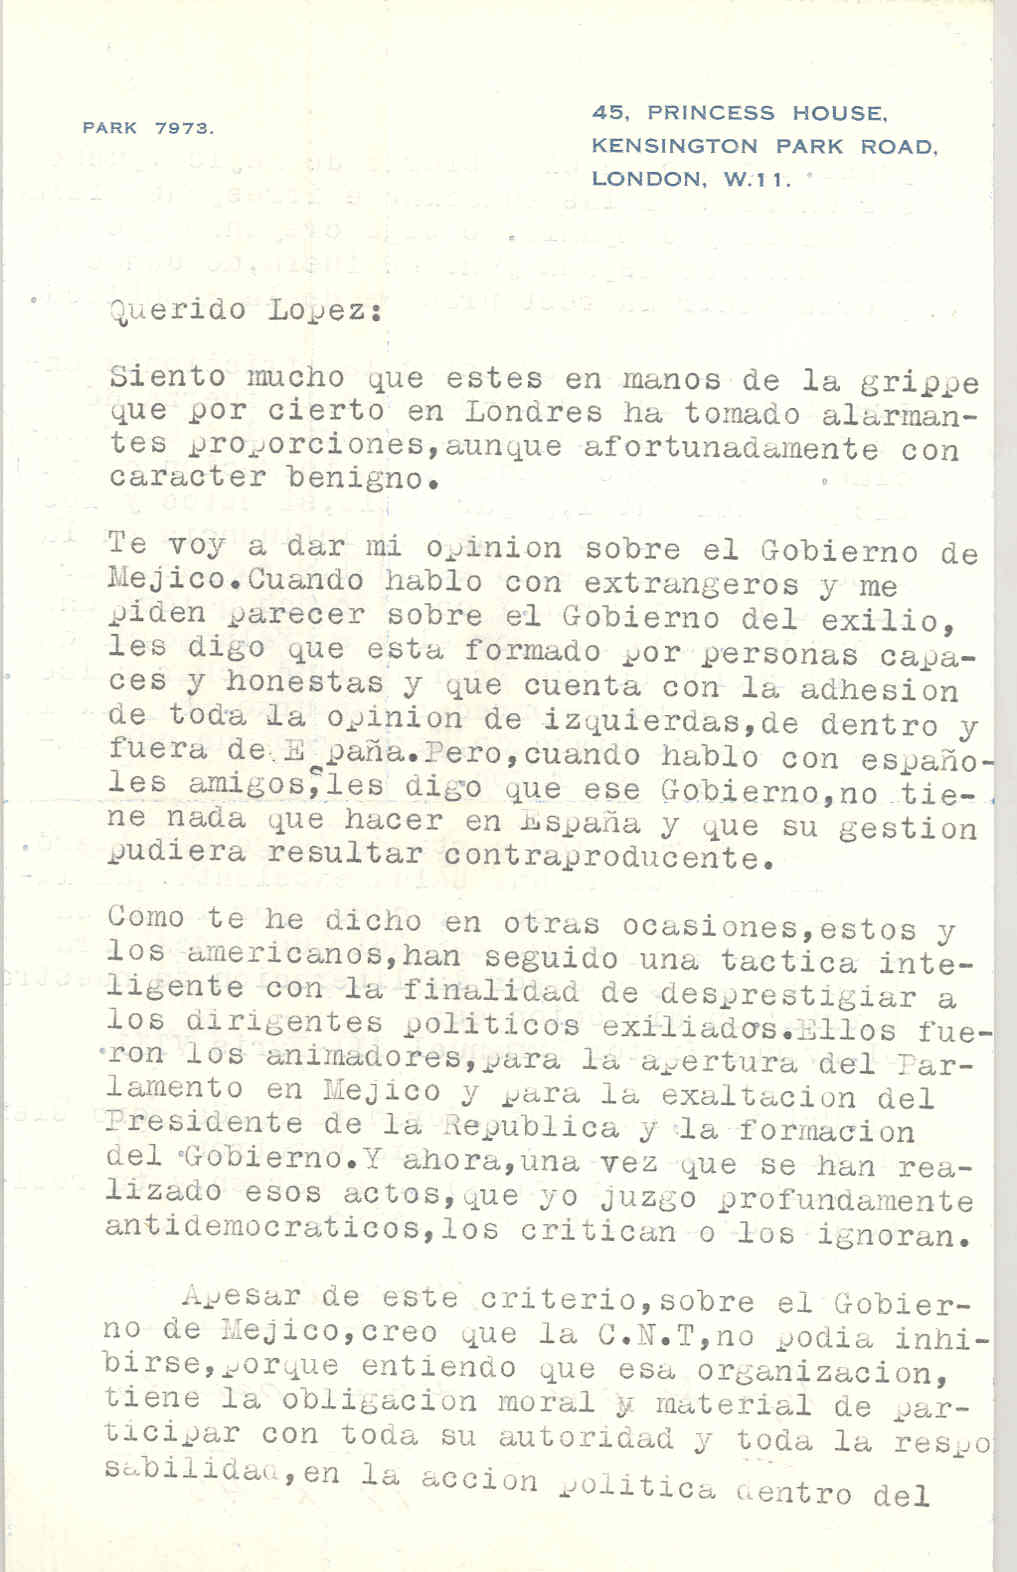 Carta de Segismundo Casado opinando sobre el gobierno de México y que con las fricciones entre Rusia y los anglosajones la fuerza de Franco aumenta.